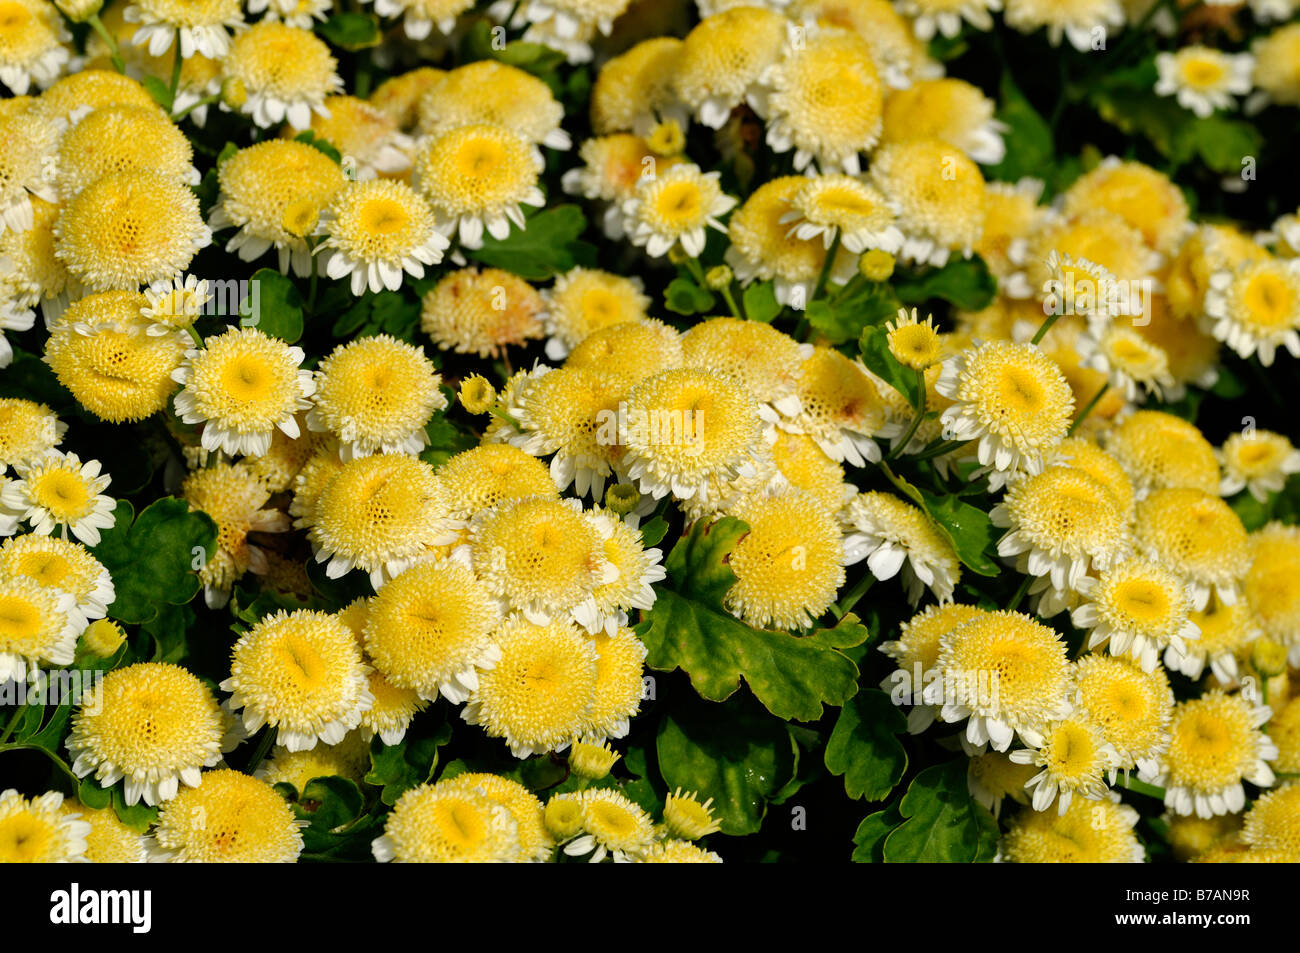 Chrysanthemum morifolium Ramat butterball flores amarillas tipo margarita flores anuales bloom blossom amarillo Foto de stock